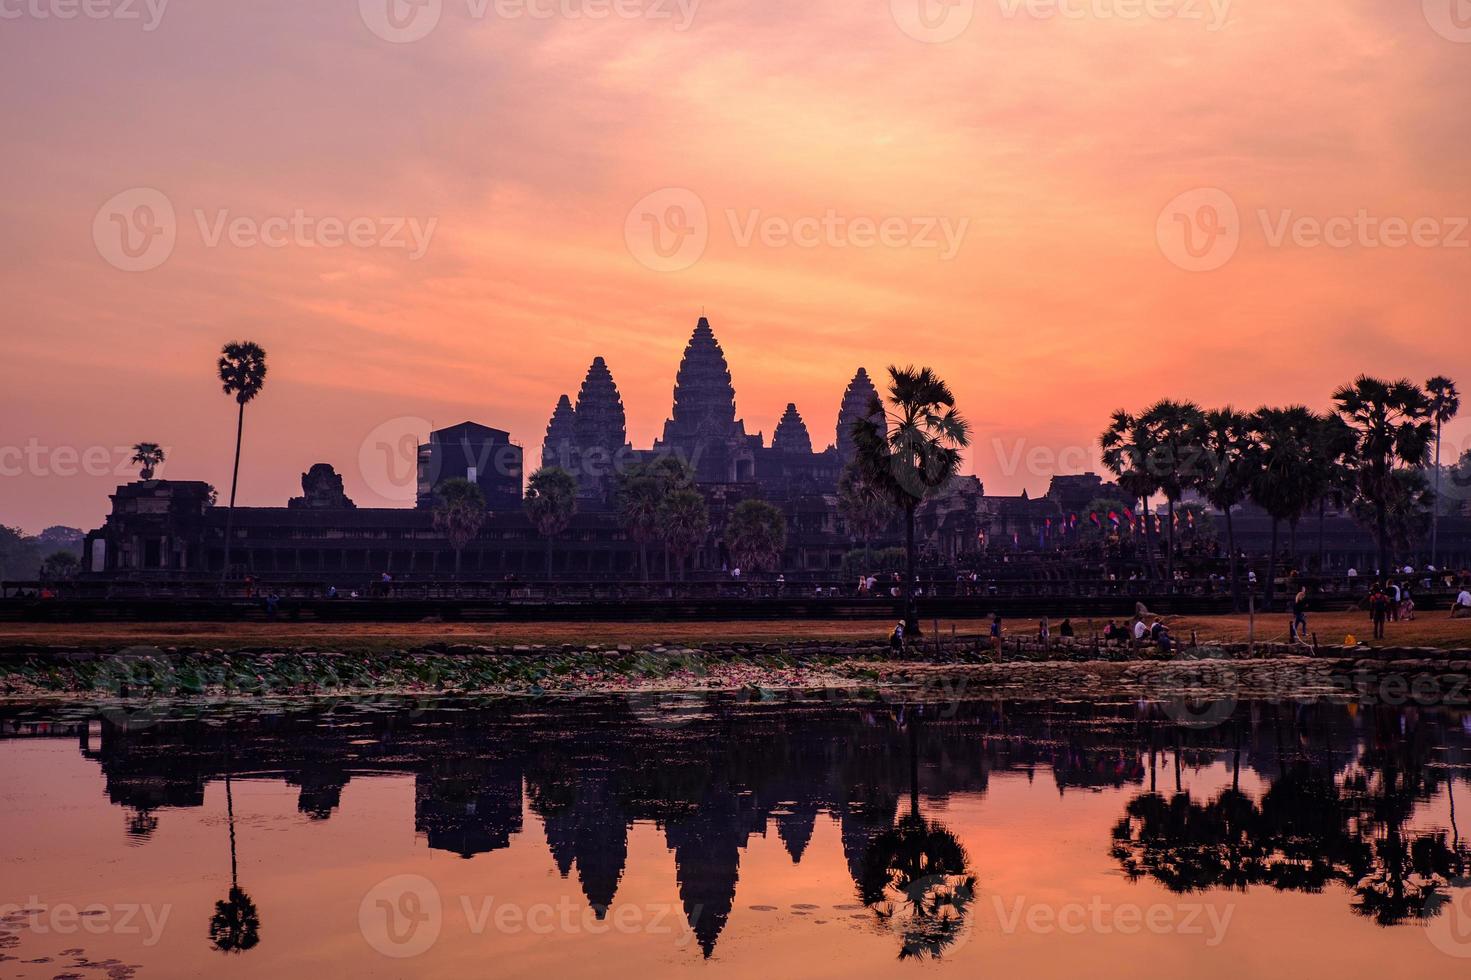 siam reap, kambodscha - 25. januar 2019 angkor wat tempel, südhaupteingang, kambodscha foto